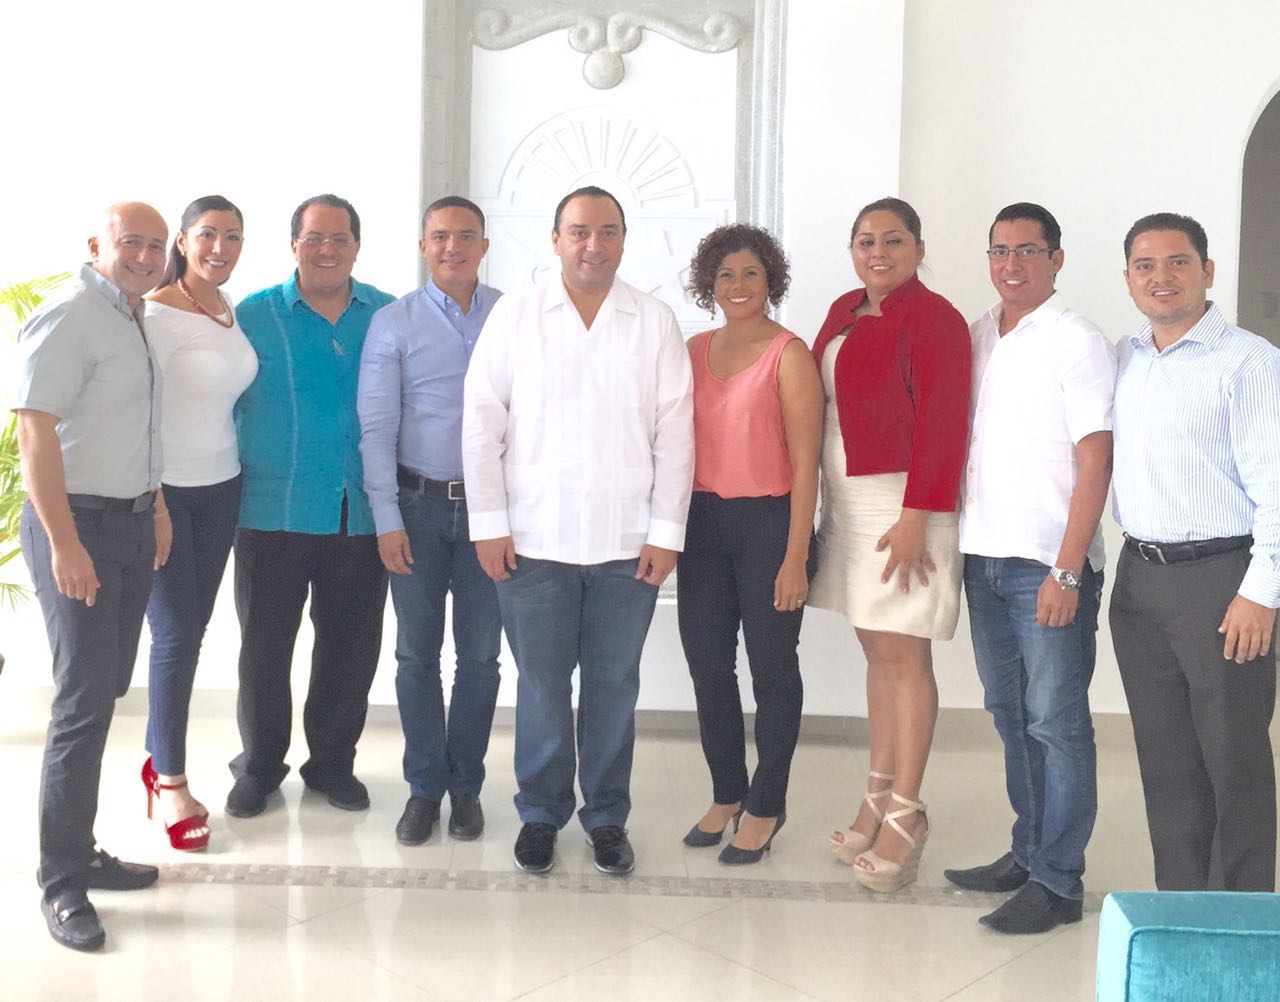 Roberto Borge, gobernador de Quintana Roo, y el delegado del PRI, Manuel Andrade Díaz, con los diputados priistas que integrarán la próxima legislatura de Quintana Roo.